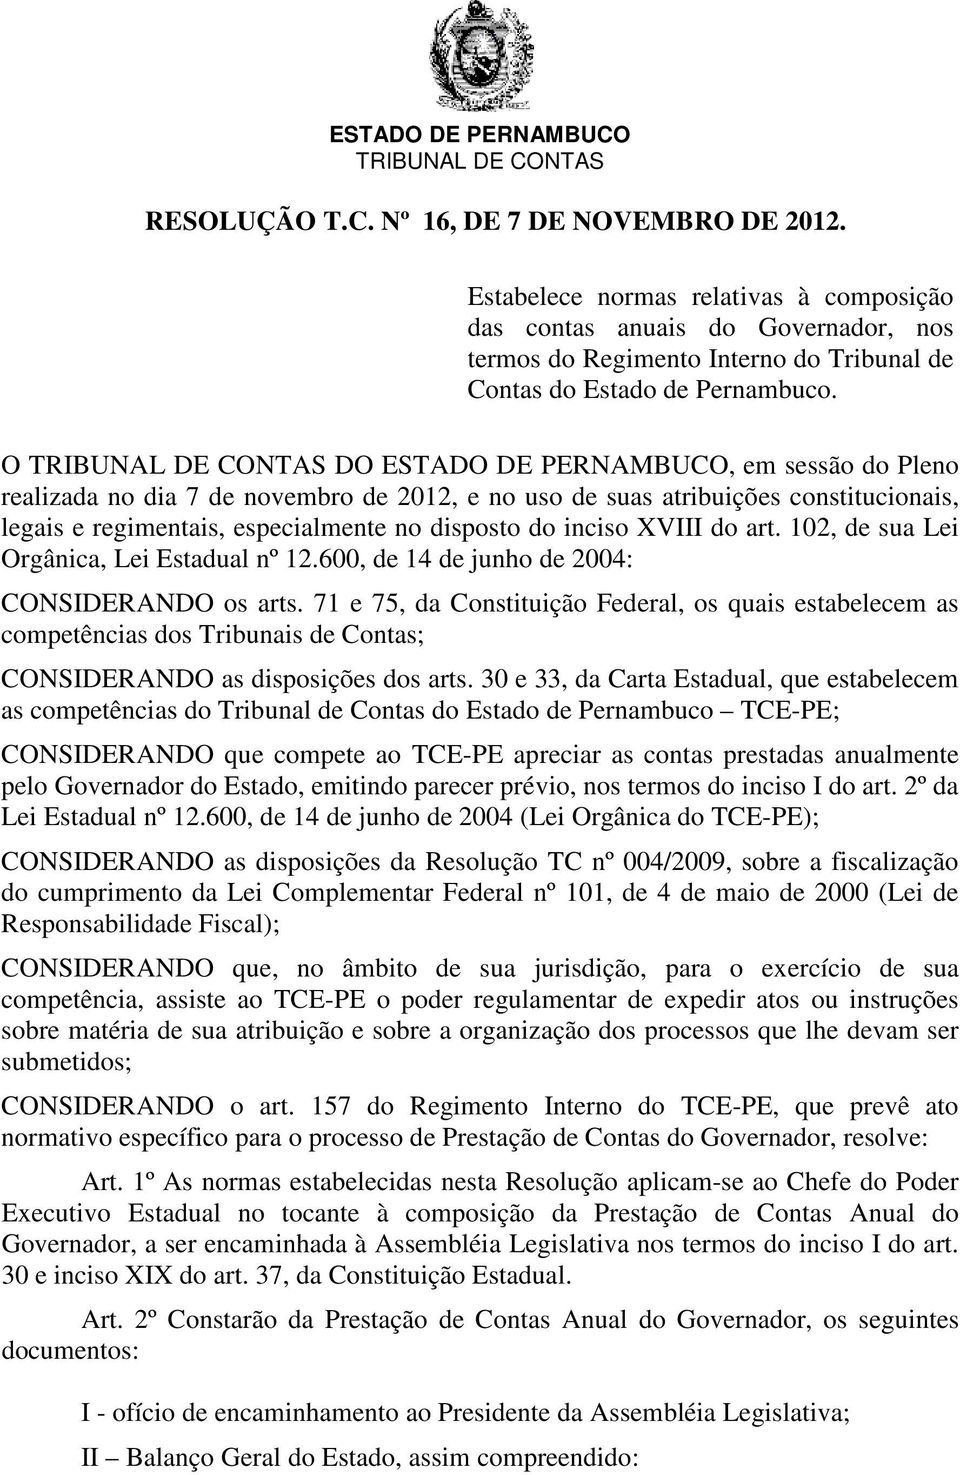 O TRIBUNAL DE CONTAS DO ESTADO DE PERNAMBUCO, em sessão do Pleno realizada no dia 7 de novembro de 2012, e no uso de suas atribuições constitucionais, legais e regimentais, especialmente no disposto